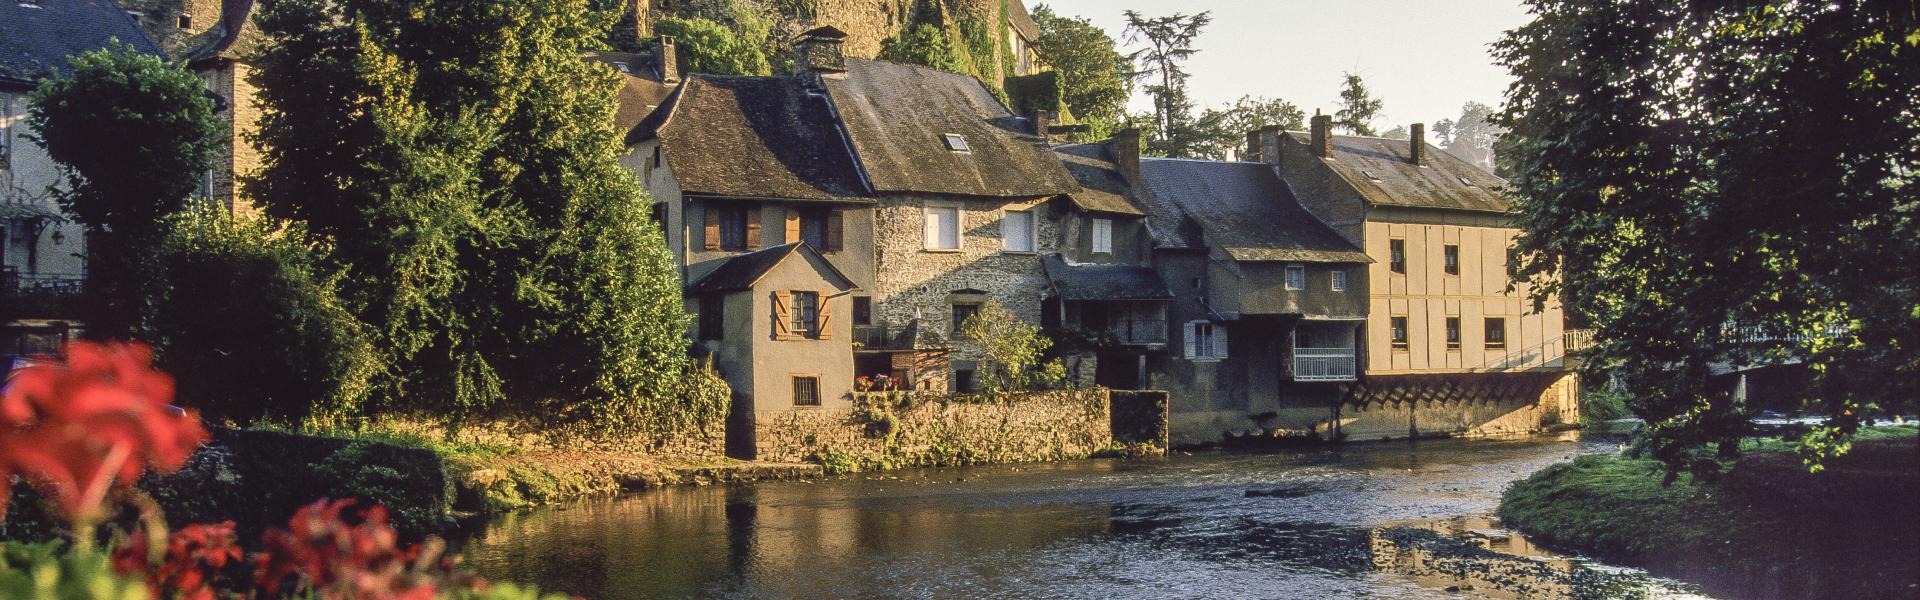 Location de vacances à Monceaux-sur-Dordogne - Corrèze - Amivac